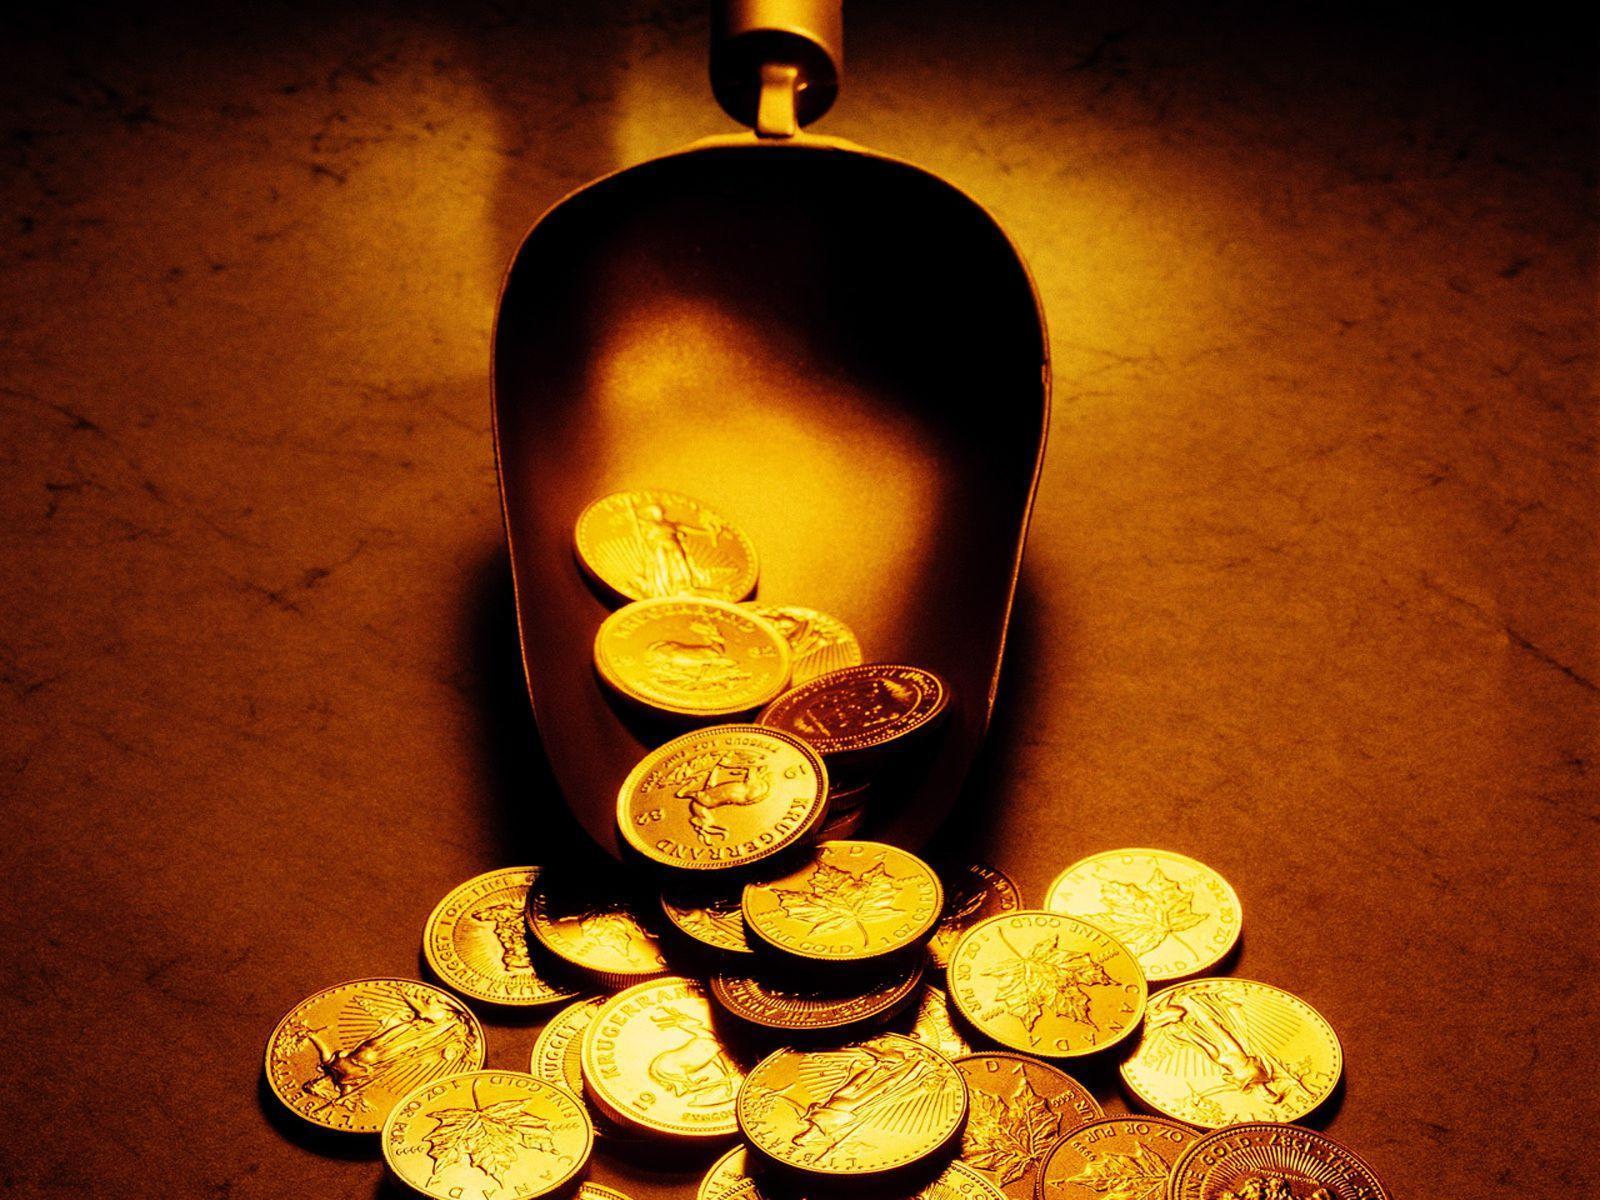 عکس خیلی جالب و باحال از سکه های ریخته از سرتاس   